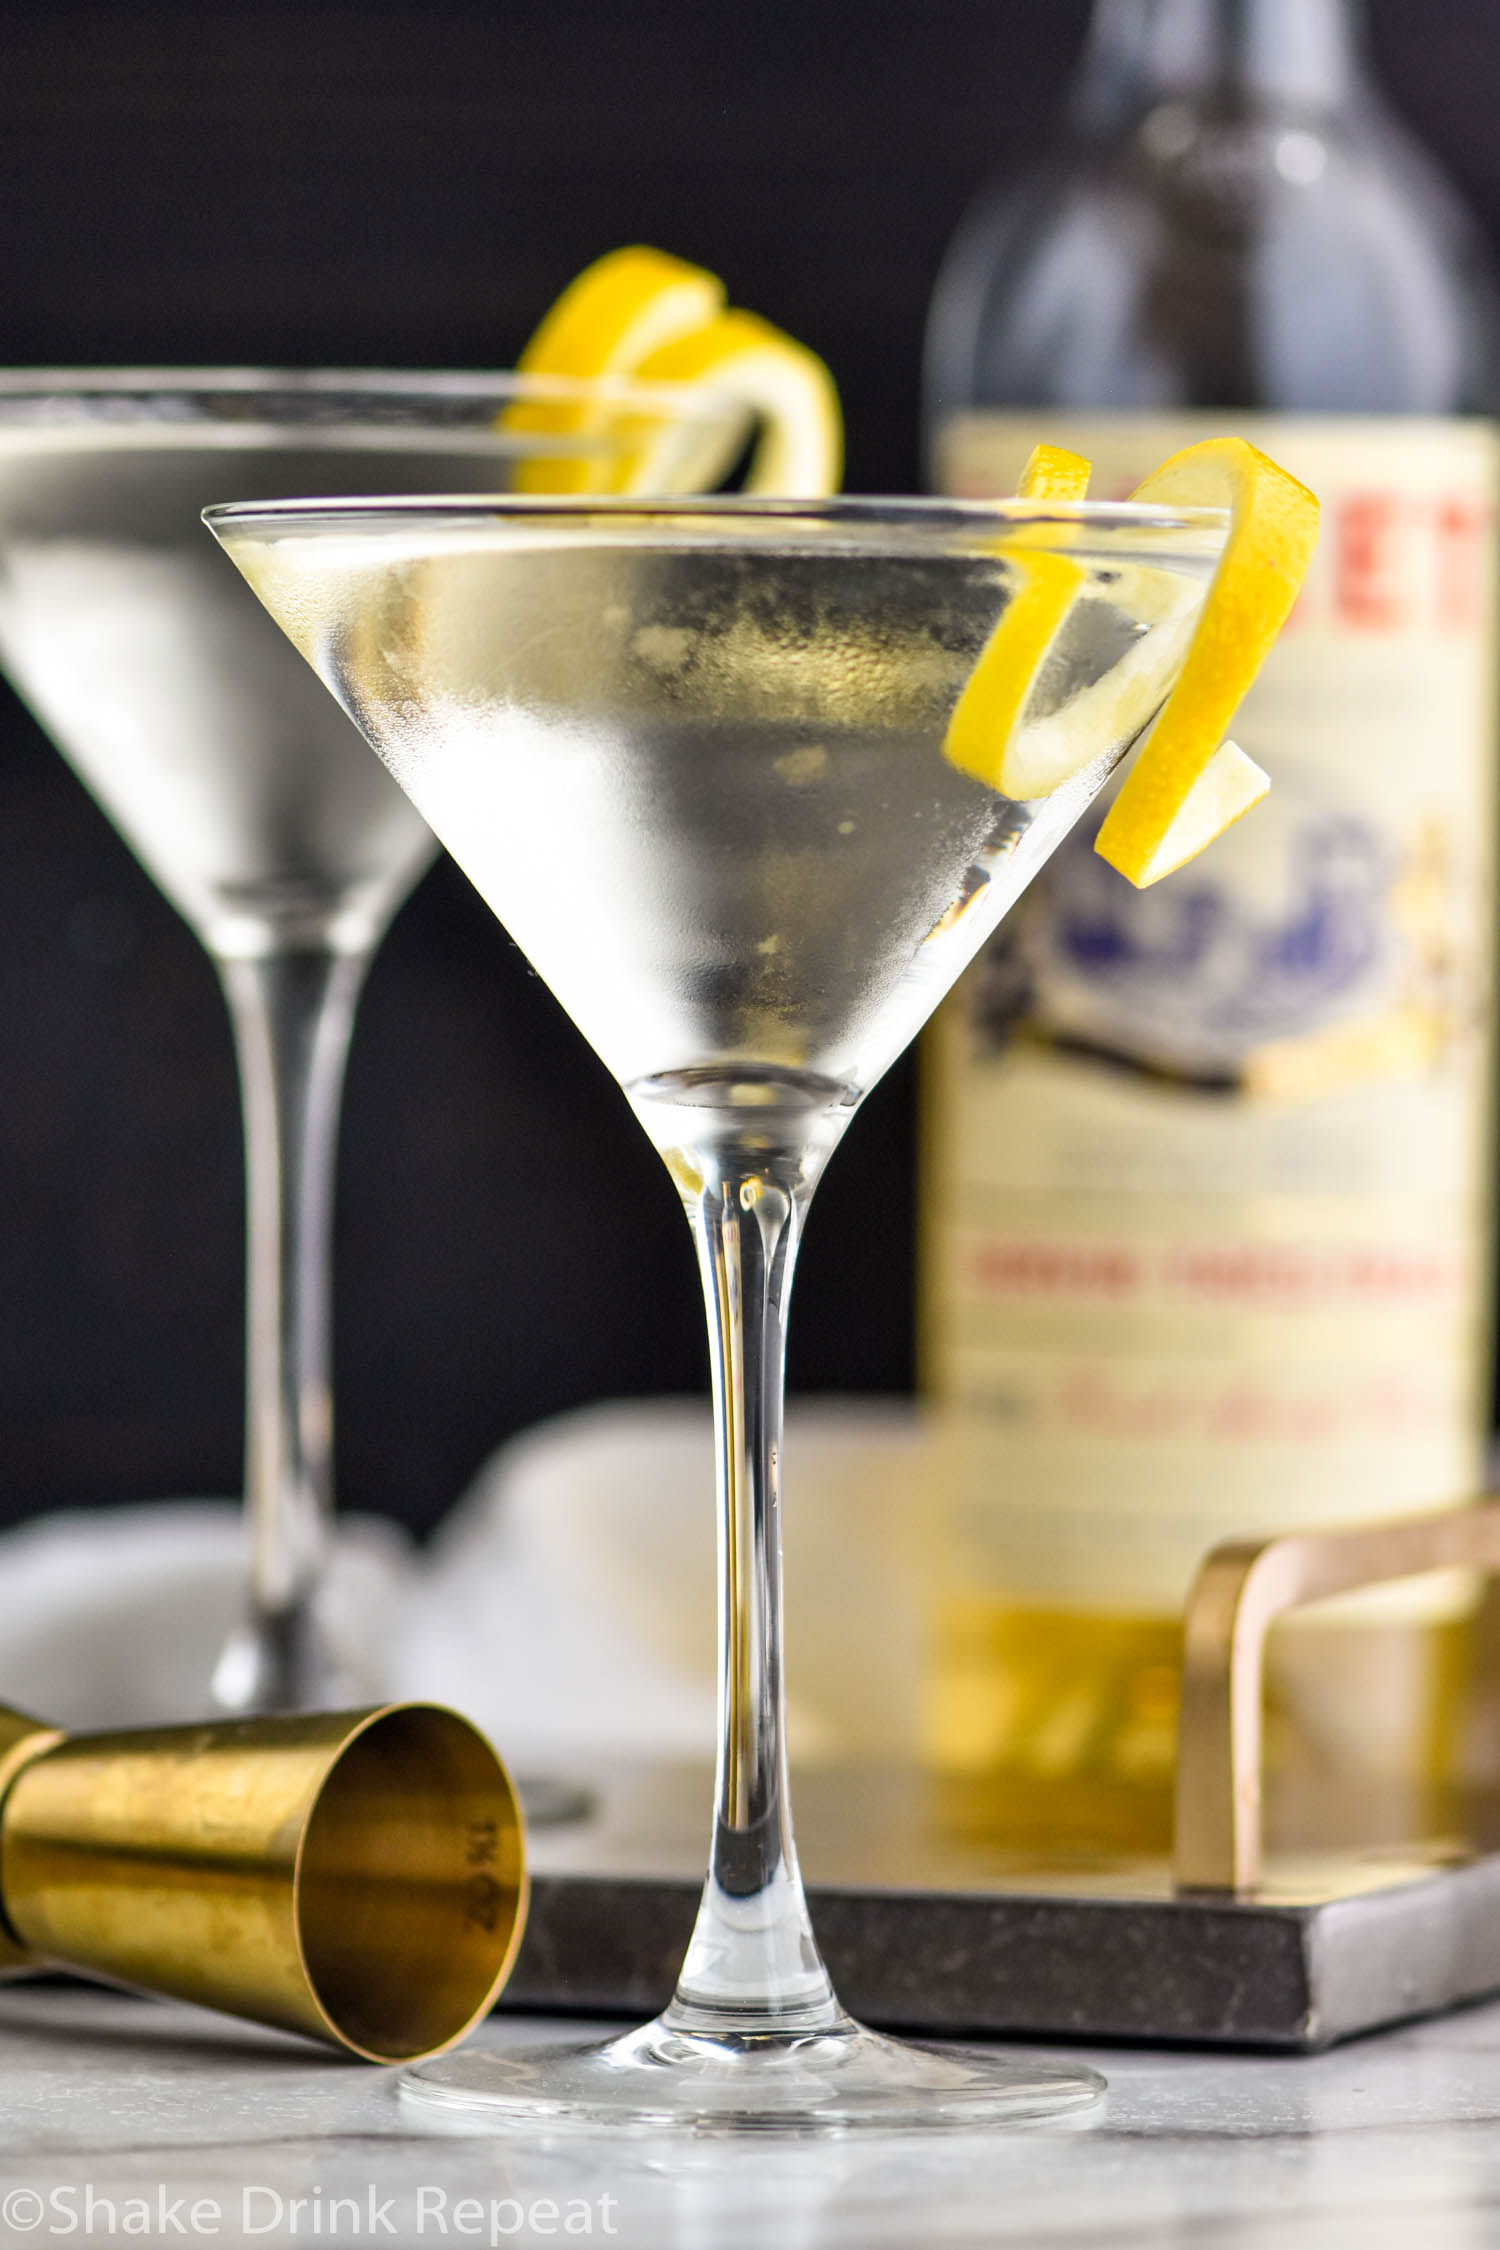 two martini glasses of Vesper Martini with lemon twist garnish